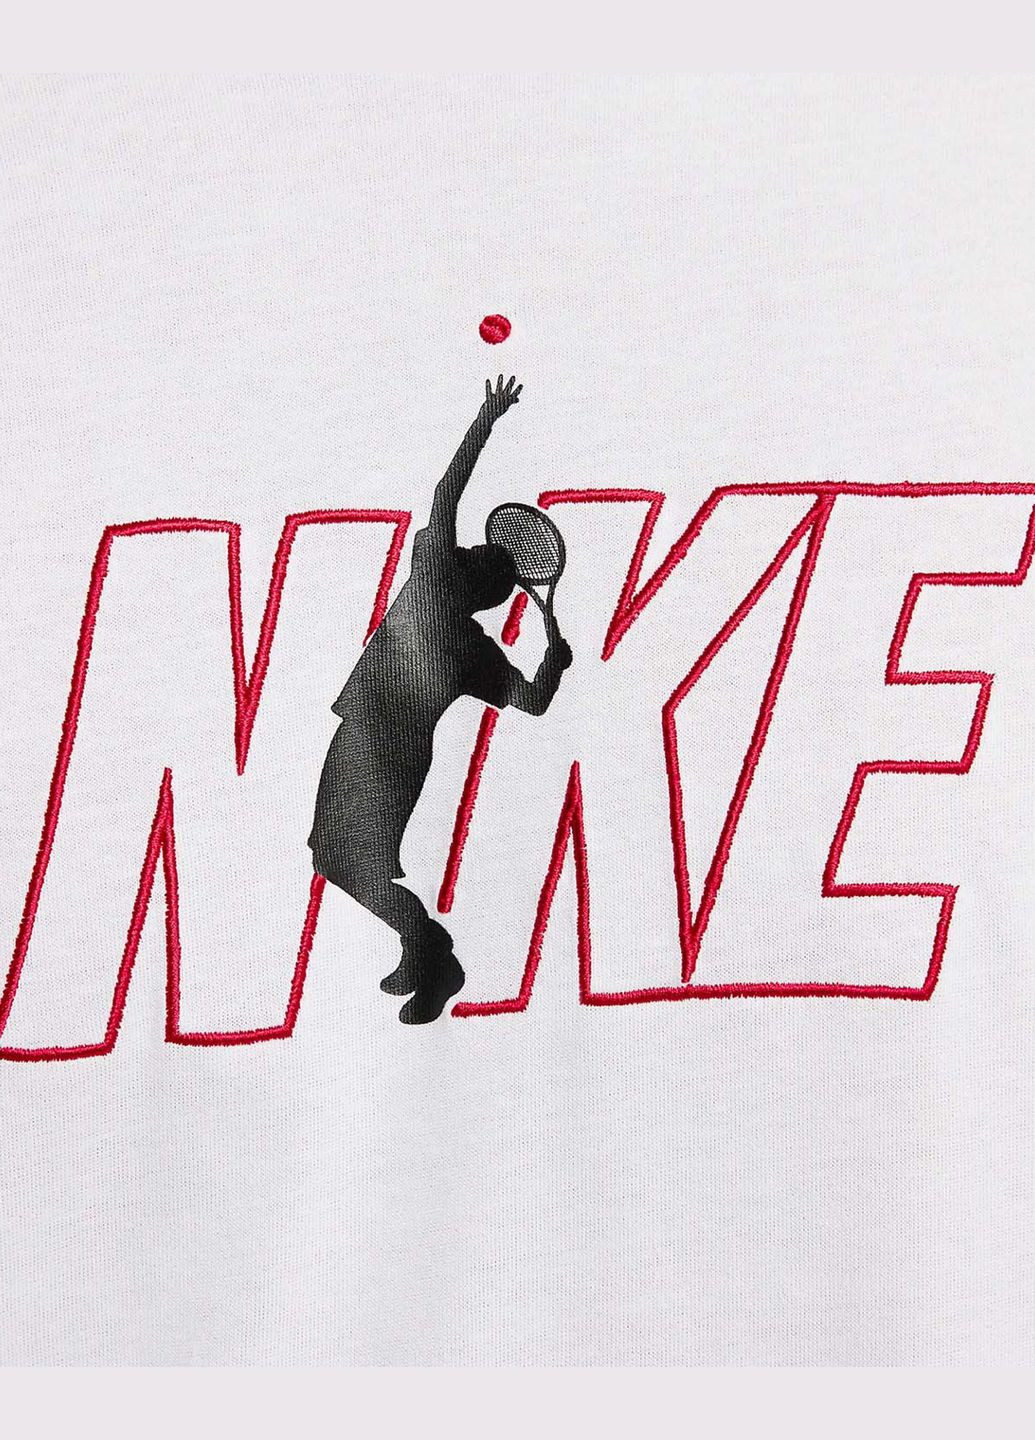 Біла футболка чоловіча court dri-fit tennis t-hirt fv8434-100 біла Nike